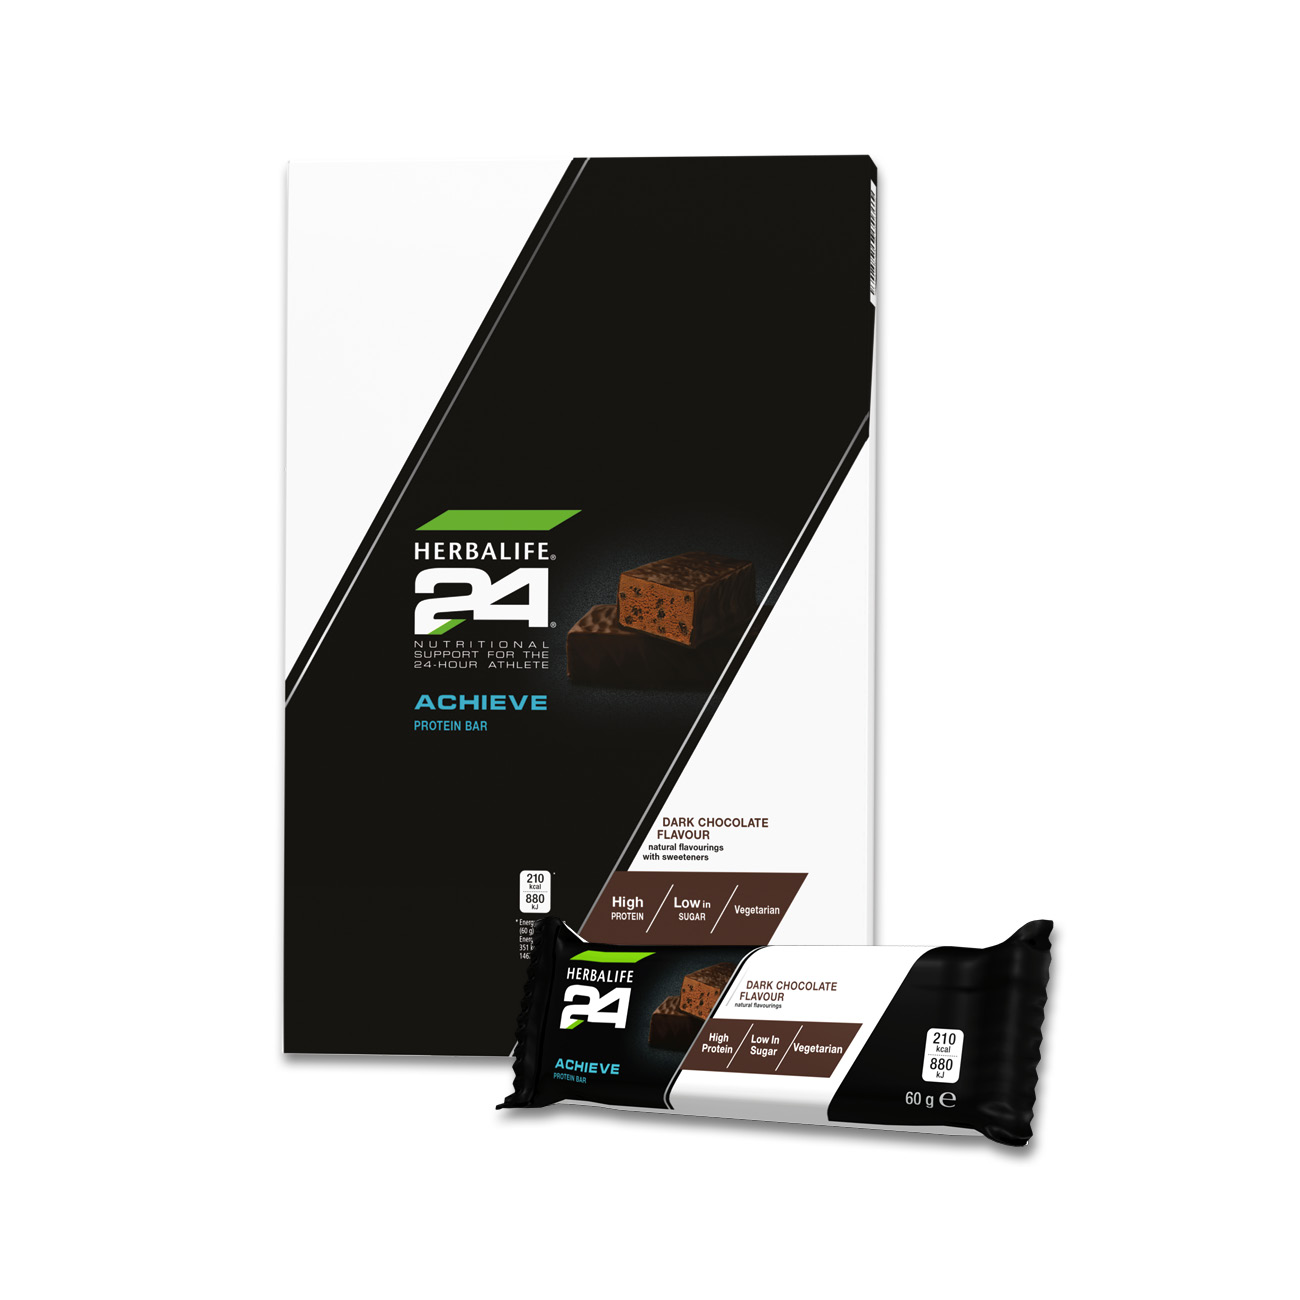 H24 Achieve Protein Bar Dark Chocolate: Herbalife.com - 3D Render 1300x1300px